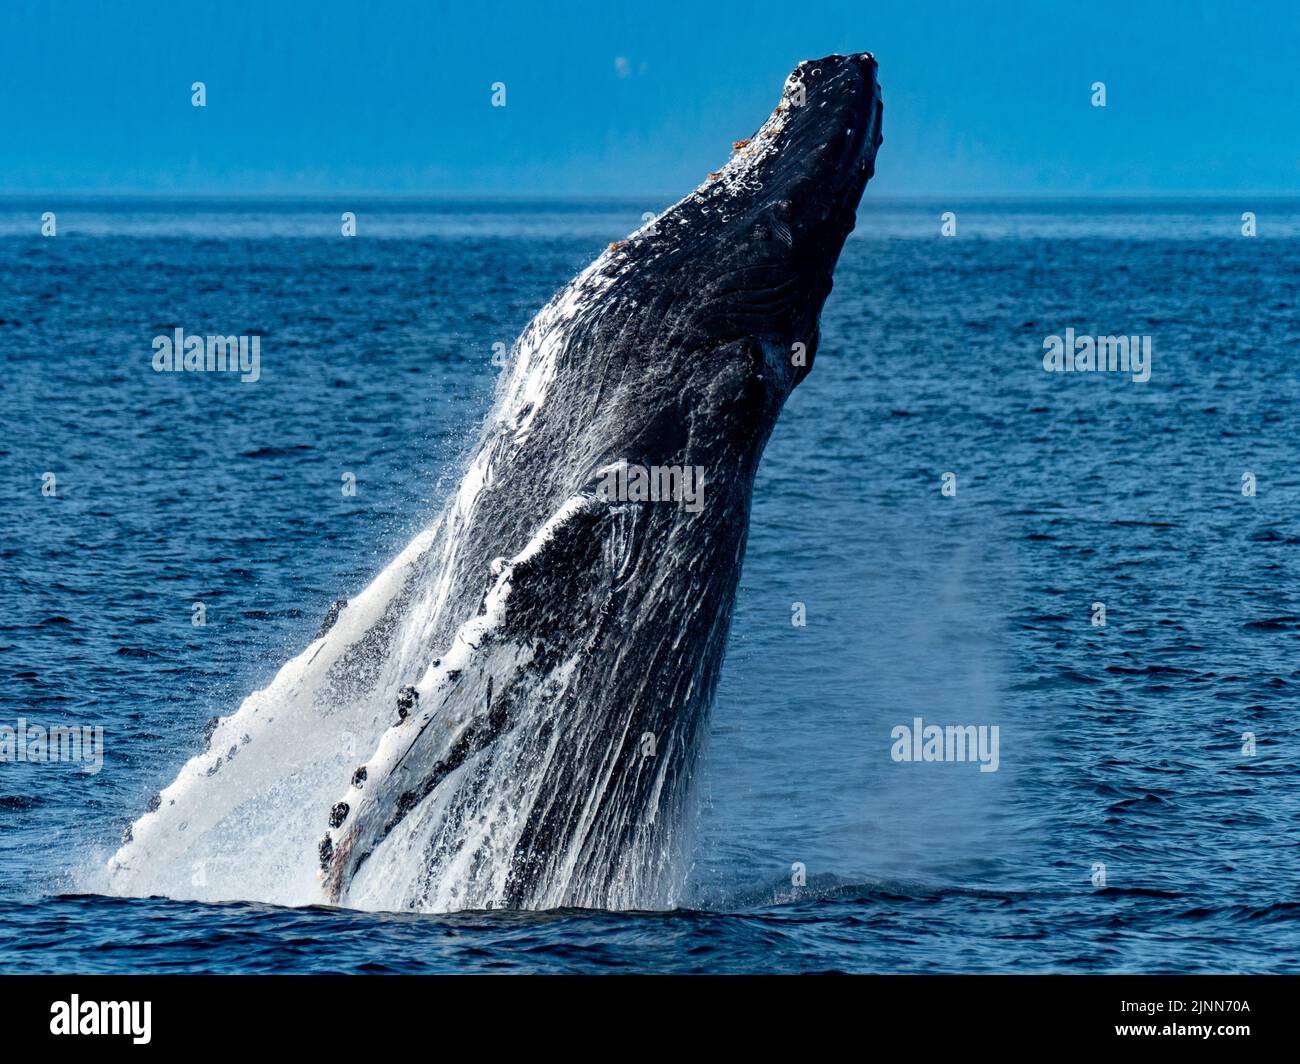 La ballena jorobada, Megaptera novaeangliae, que rompe en las aguas del sudeste de Alaska, EE.UU Foto de stock